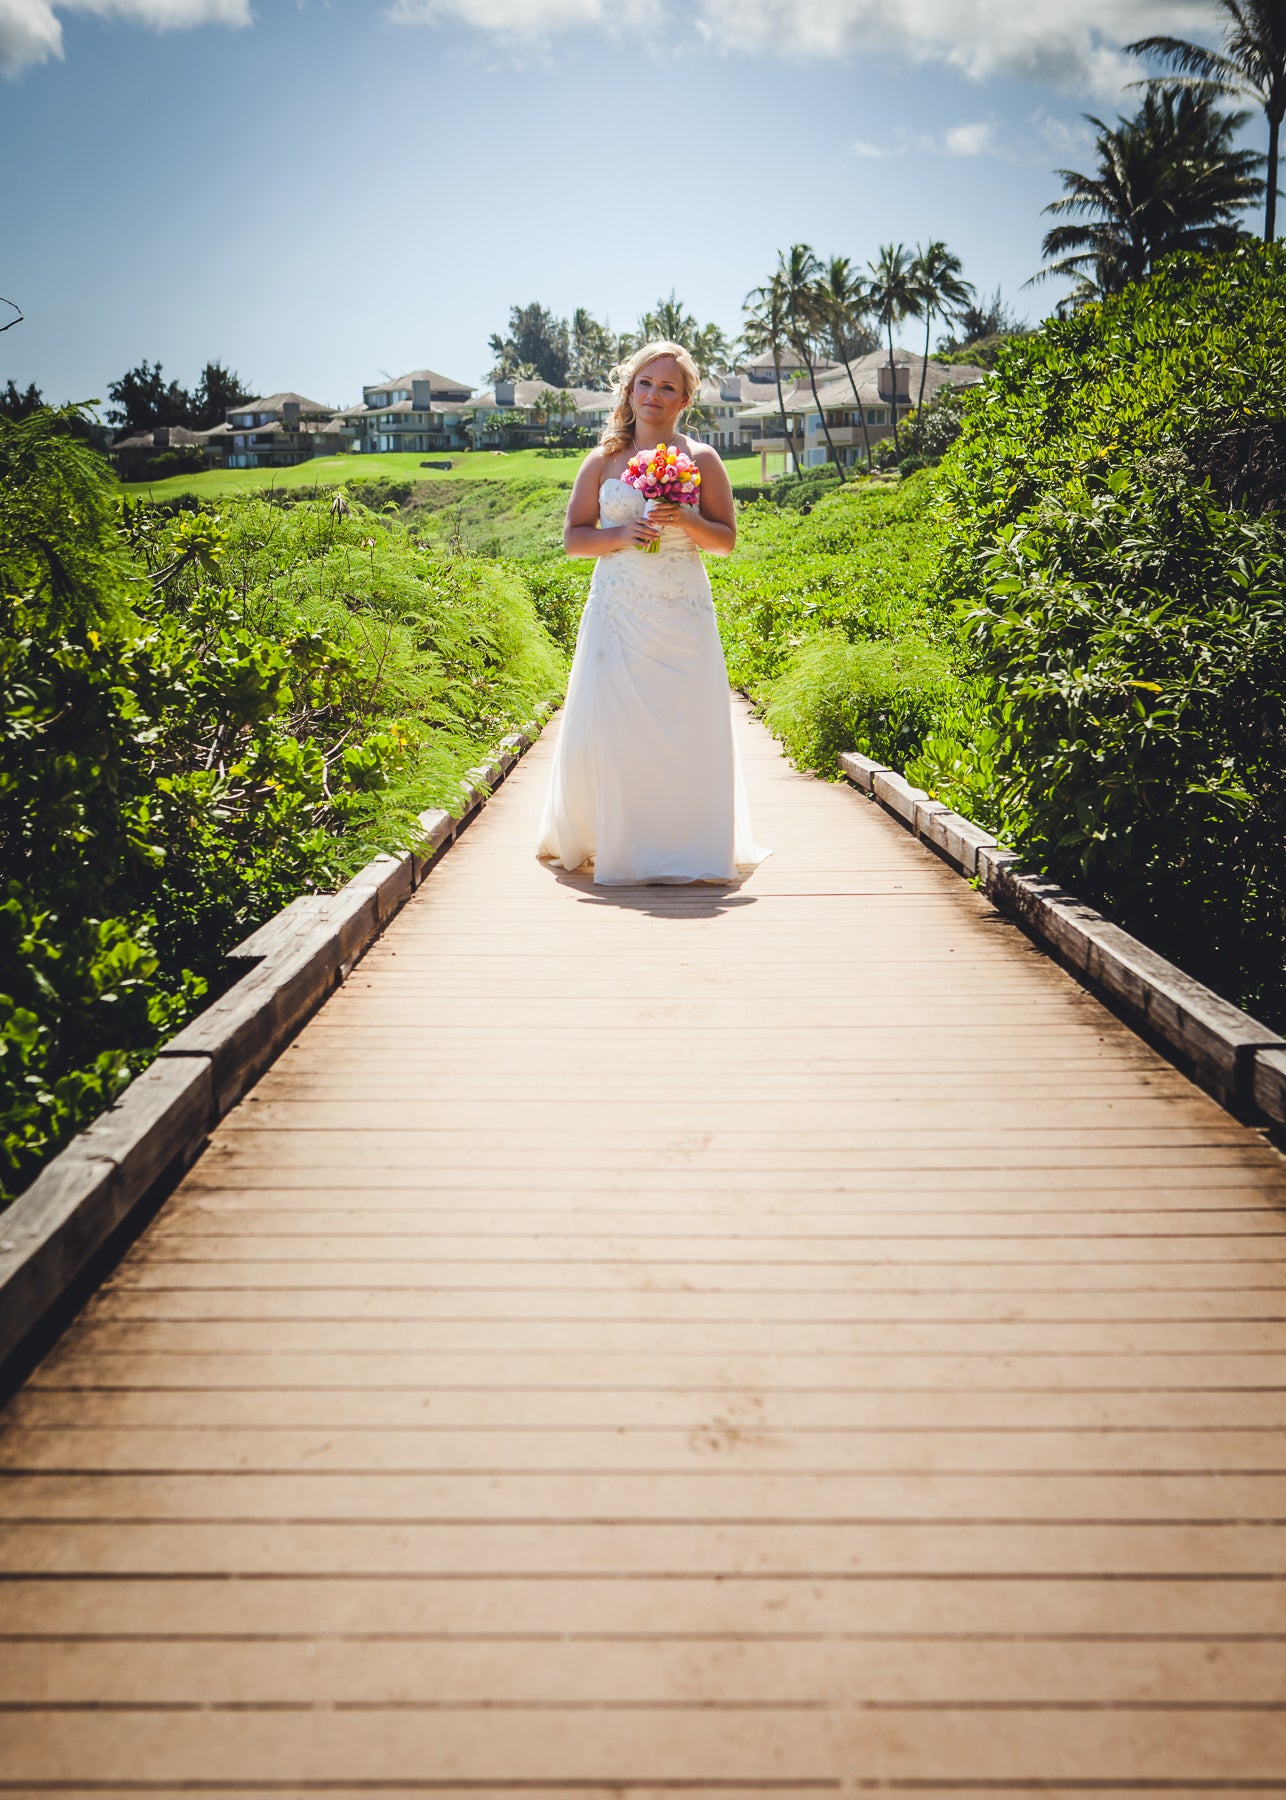 Brides walks along walkway in Maui, Hawaii